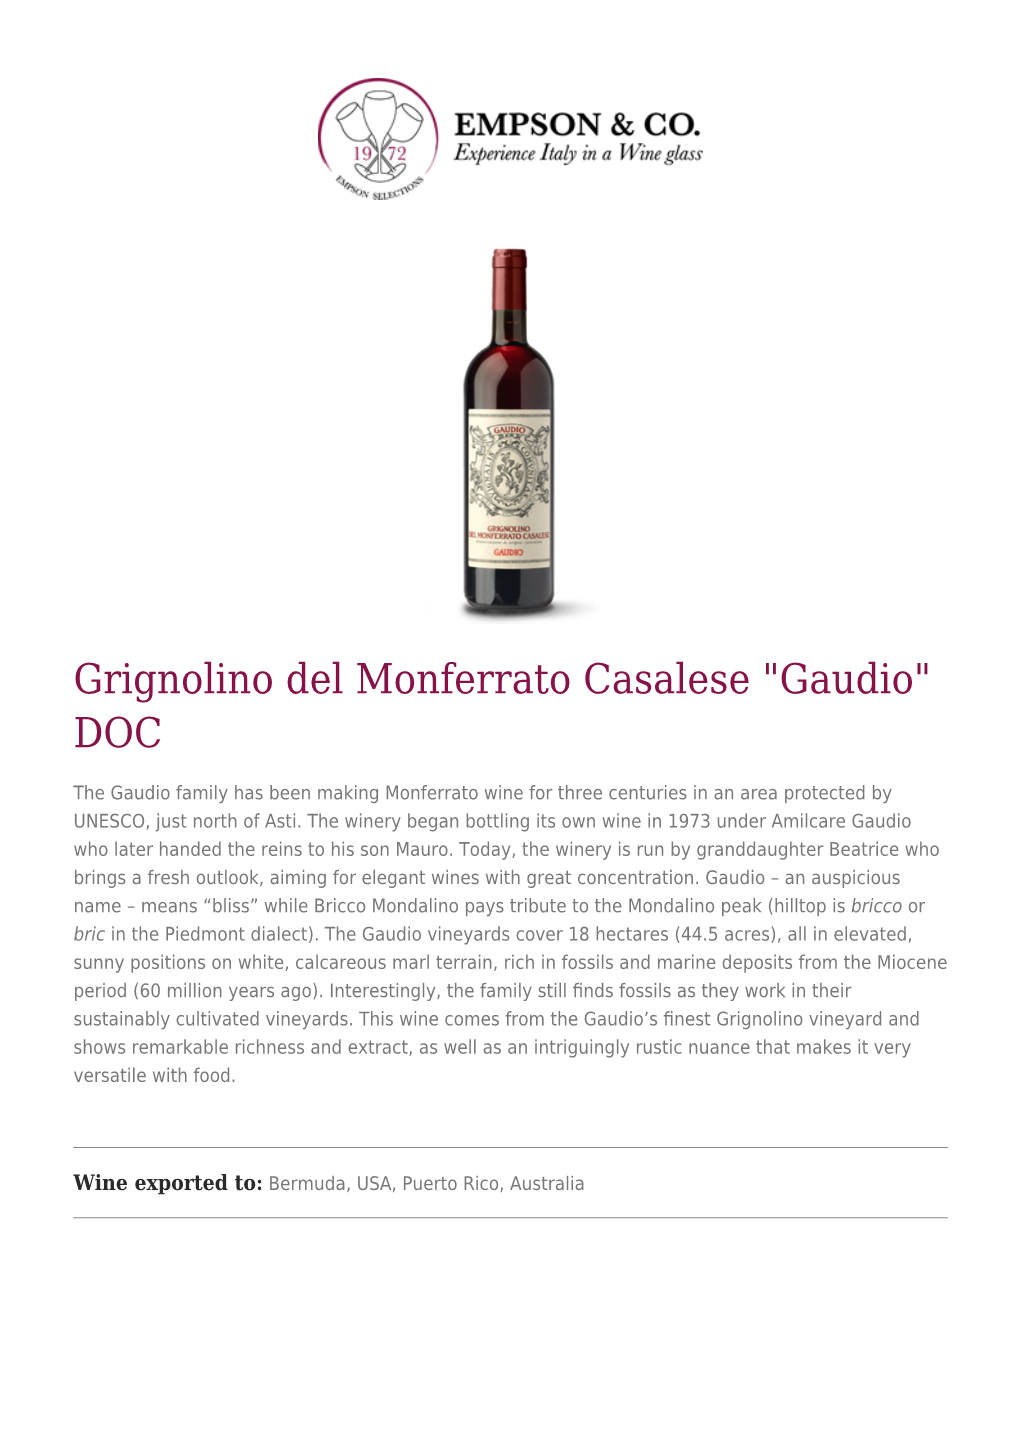 Grignolino Del Monferrato Casalese "Gaudio" DOC